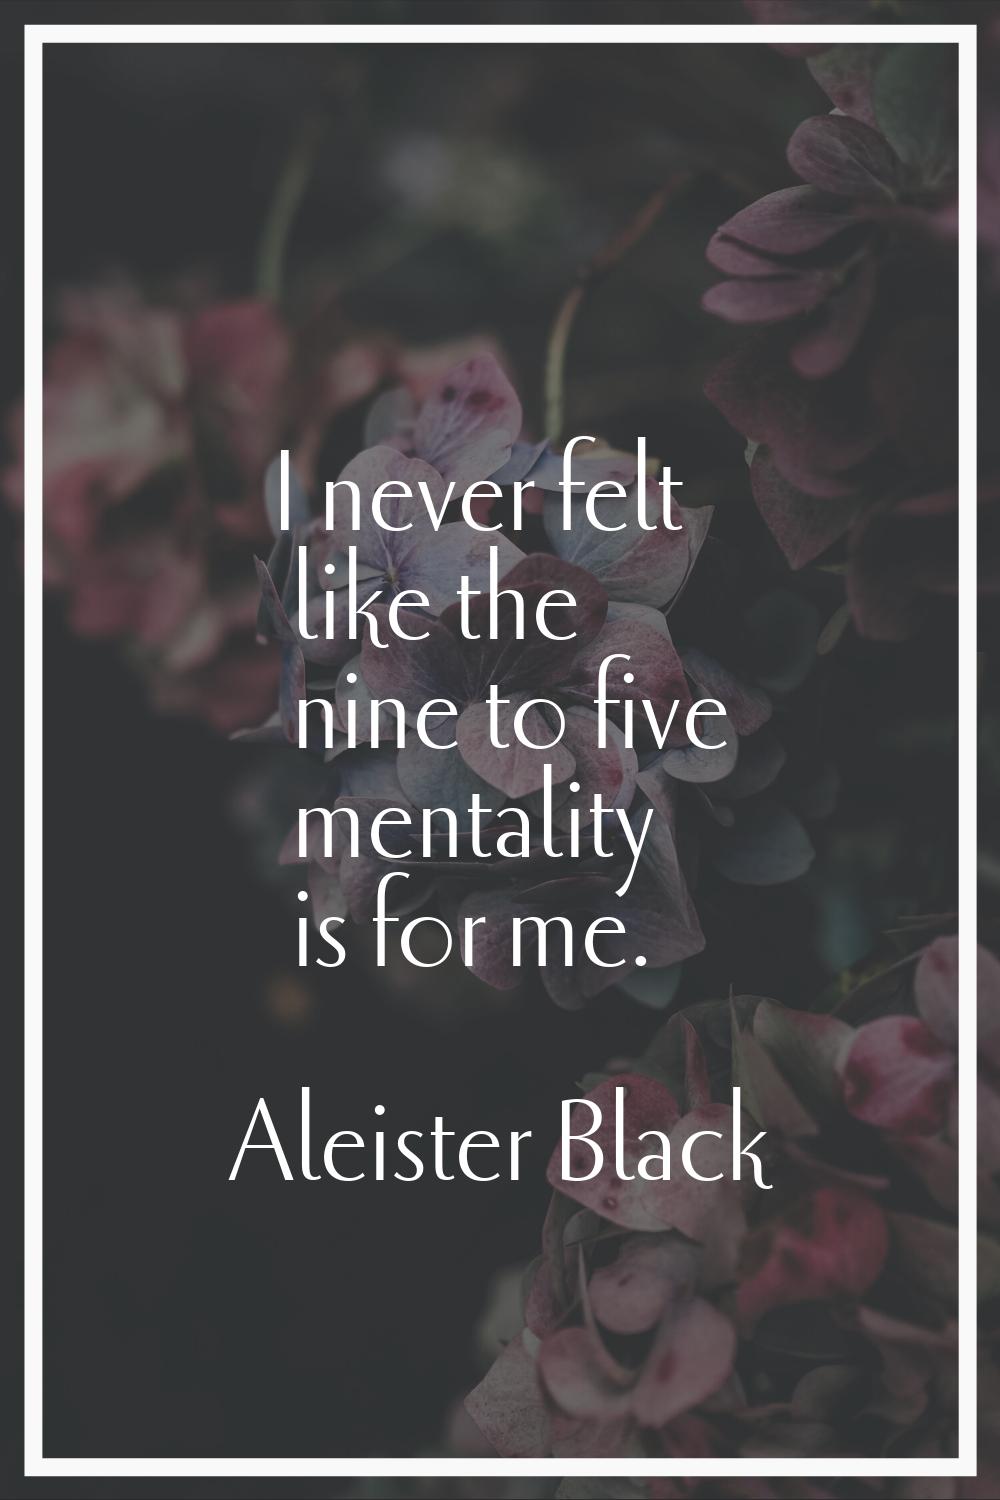 I never felt like the nine to five mentality is for me.